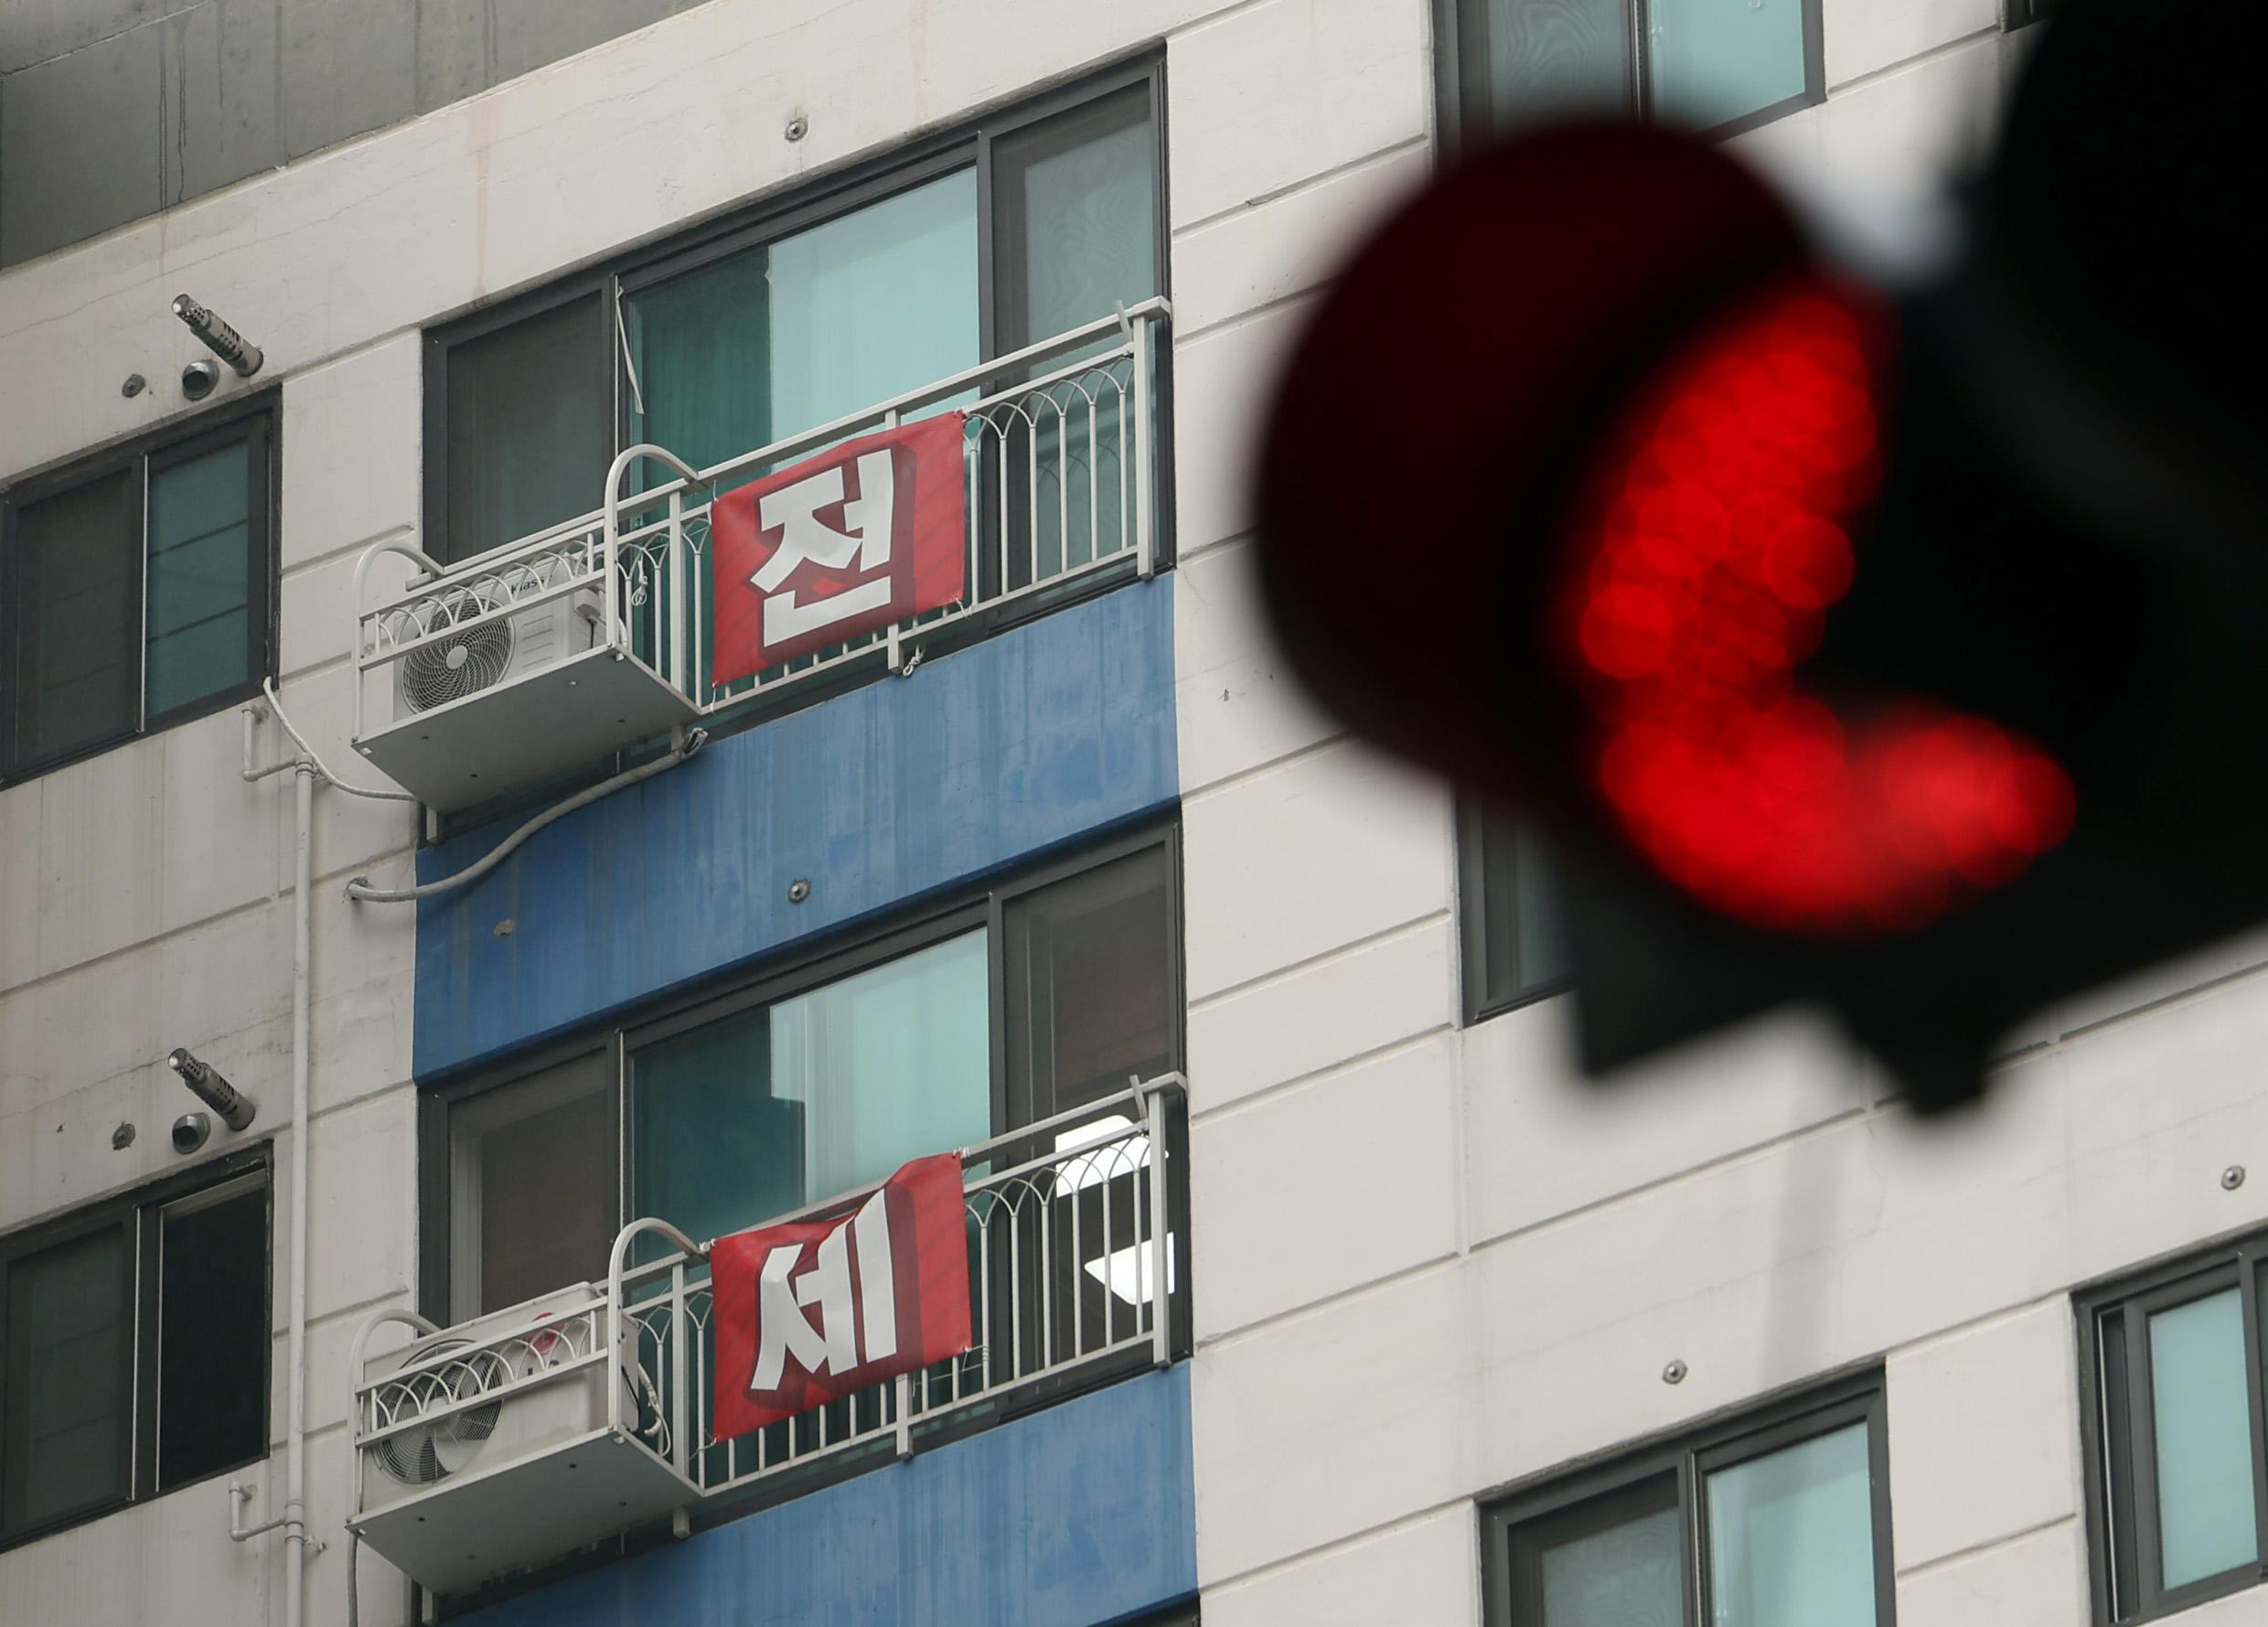 최근 인천에서 전세사기 피해자 3명이 잇따라 숨진 가운데 18일 인천 미추홀구 전세사기 피해자들의 아파트 창문에 피해를 호소하는 현수막이 걸려 있다. 연합뉴스